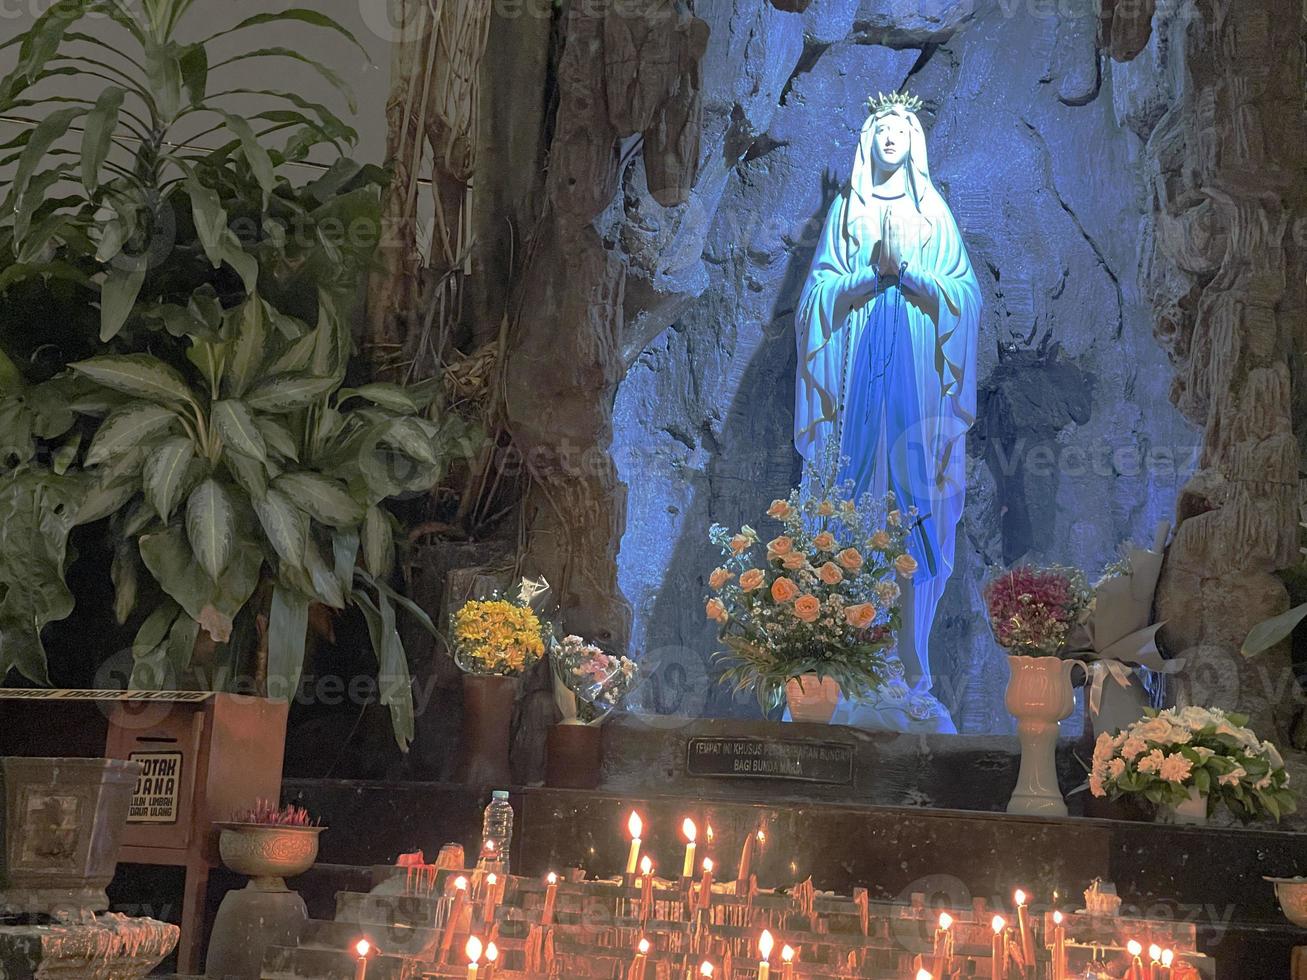 la grotte de la vierge marie, statue de la vierge marie dans une grotte rocheuse chapelle église catholique avec végétation tropicale photo